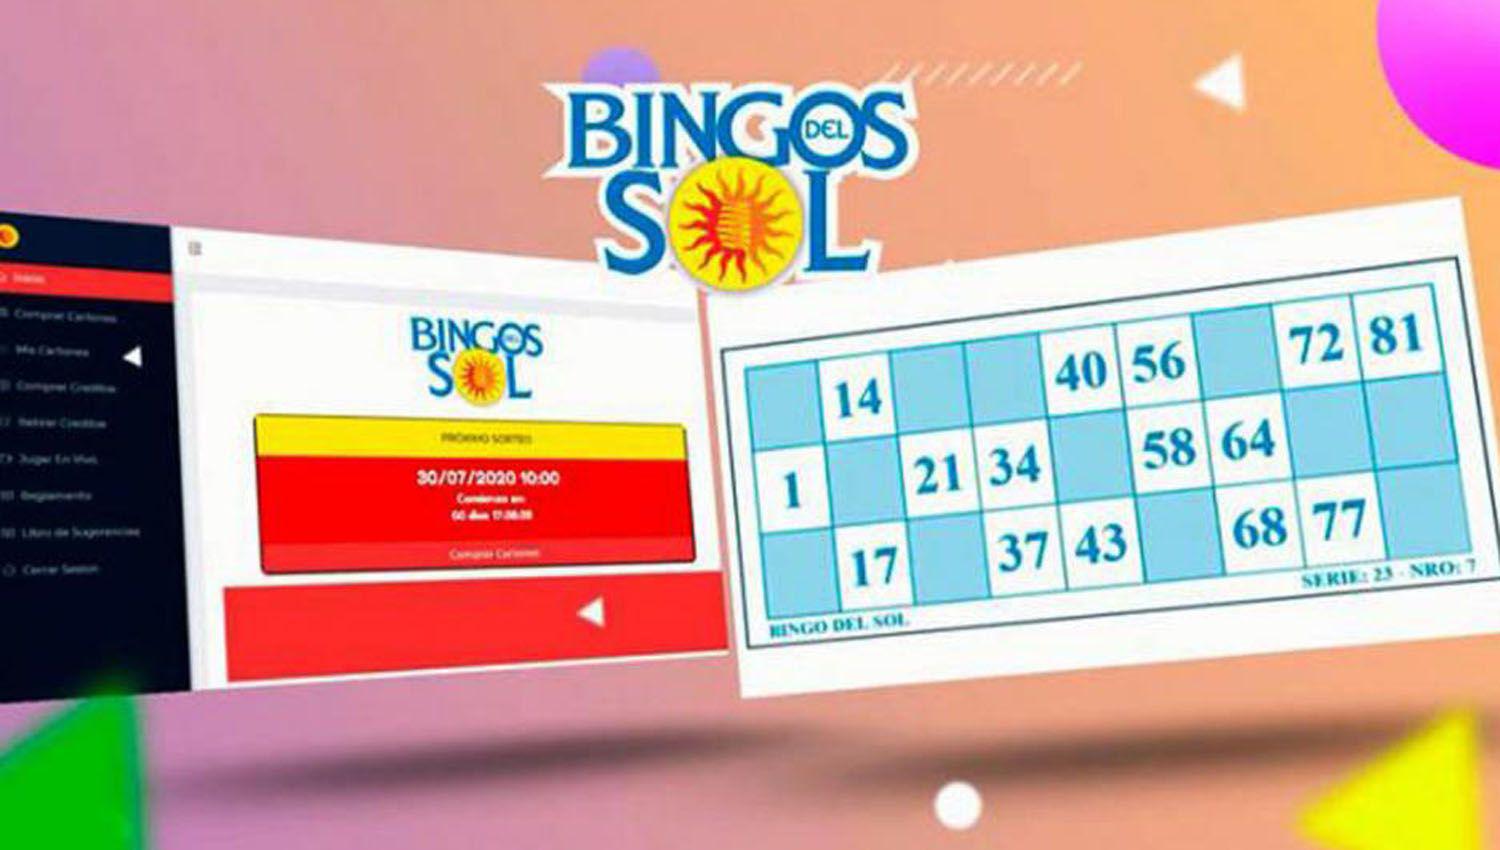 Un santiaguentildeo se llevoacute el pozo de Bingo del Sol online- casi 400000